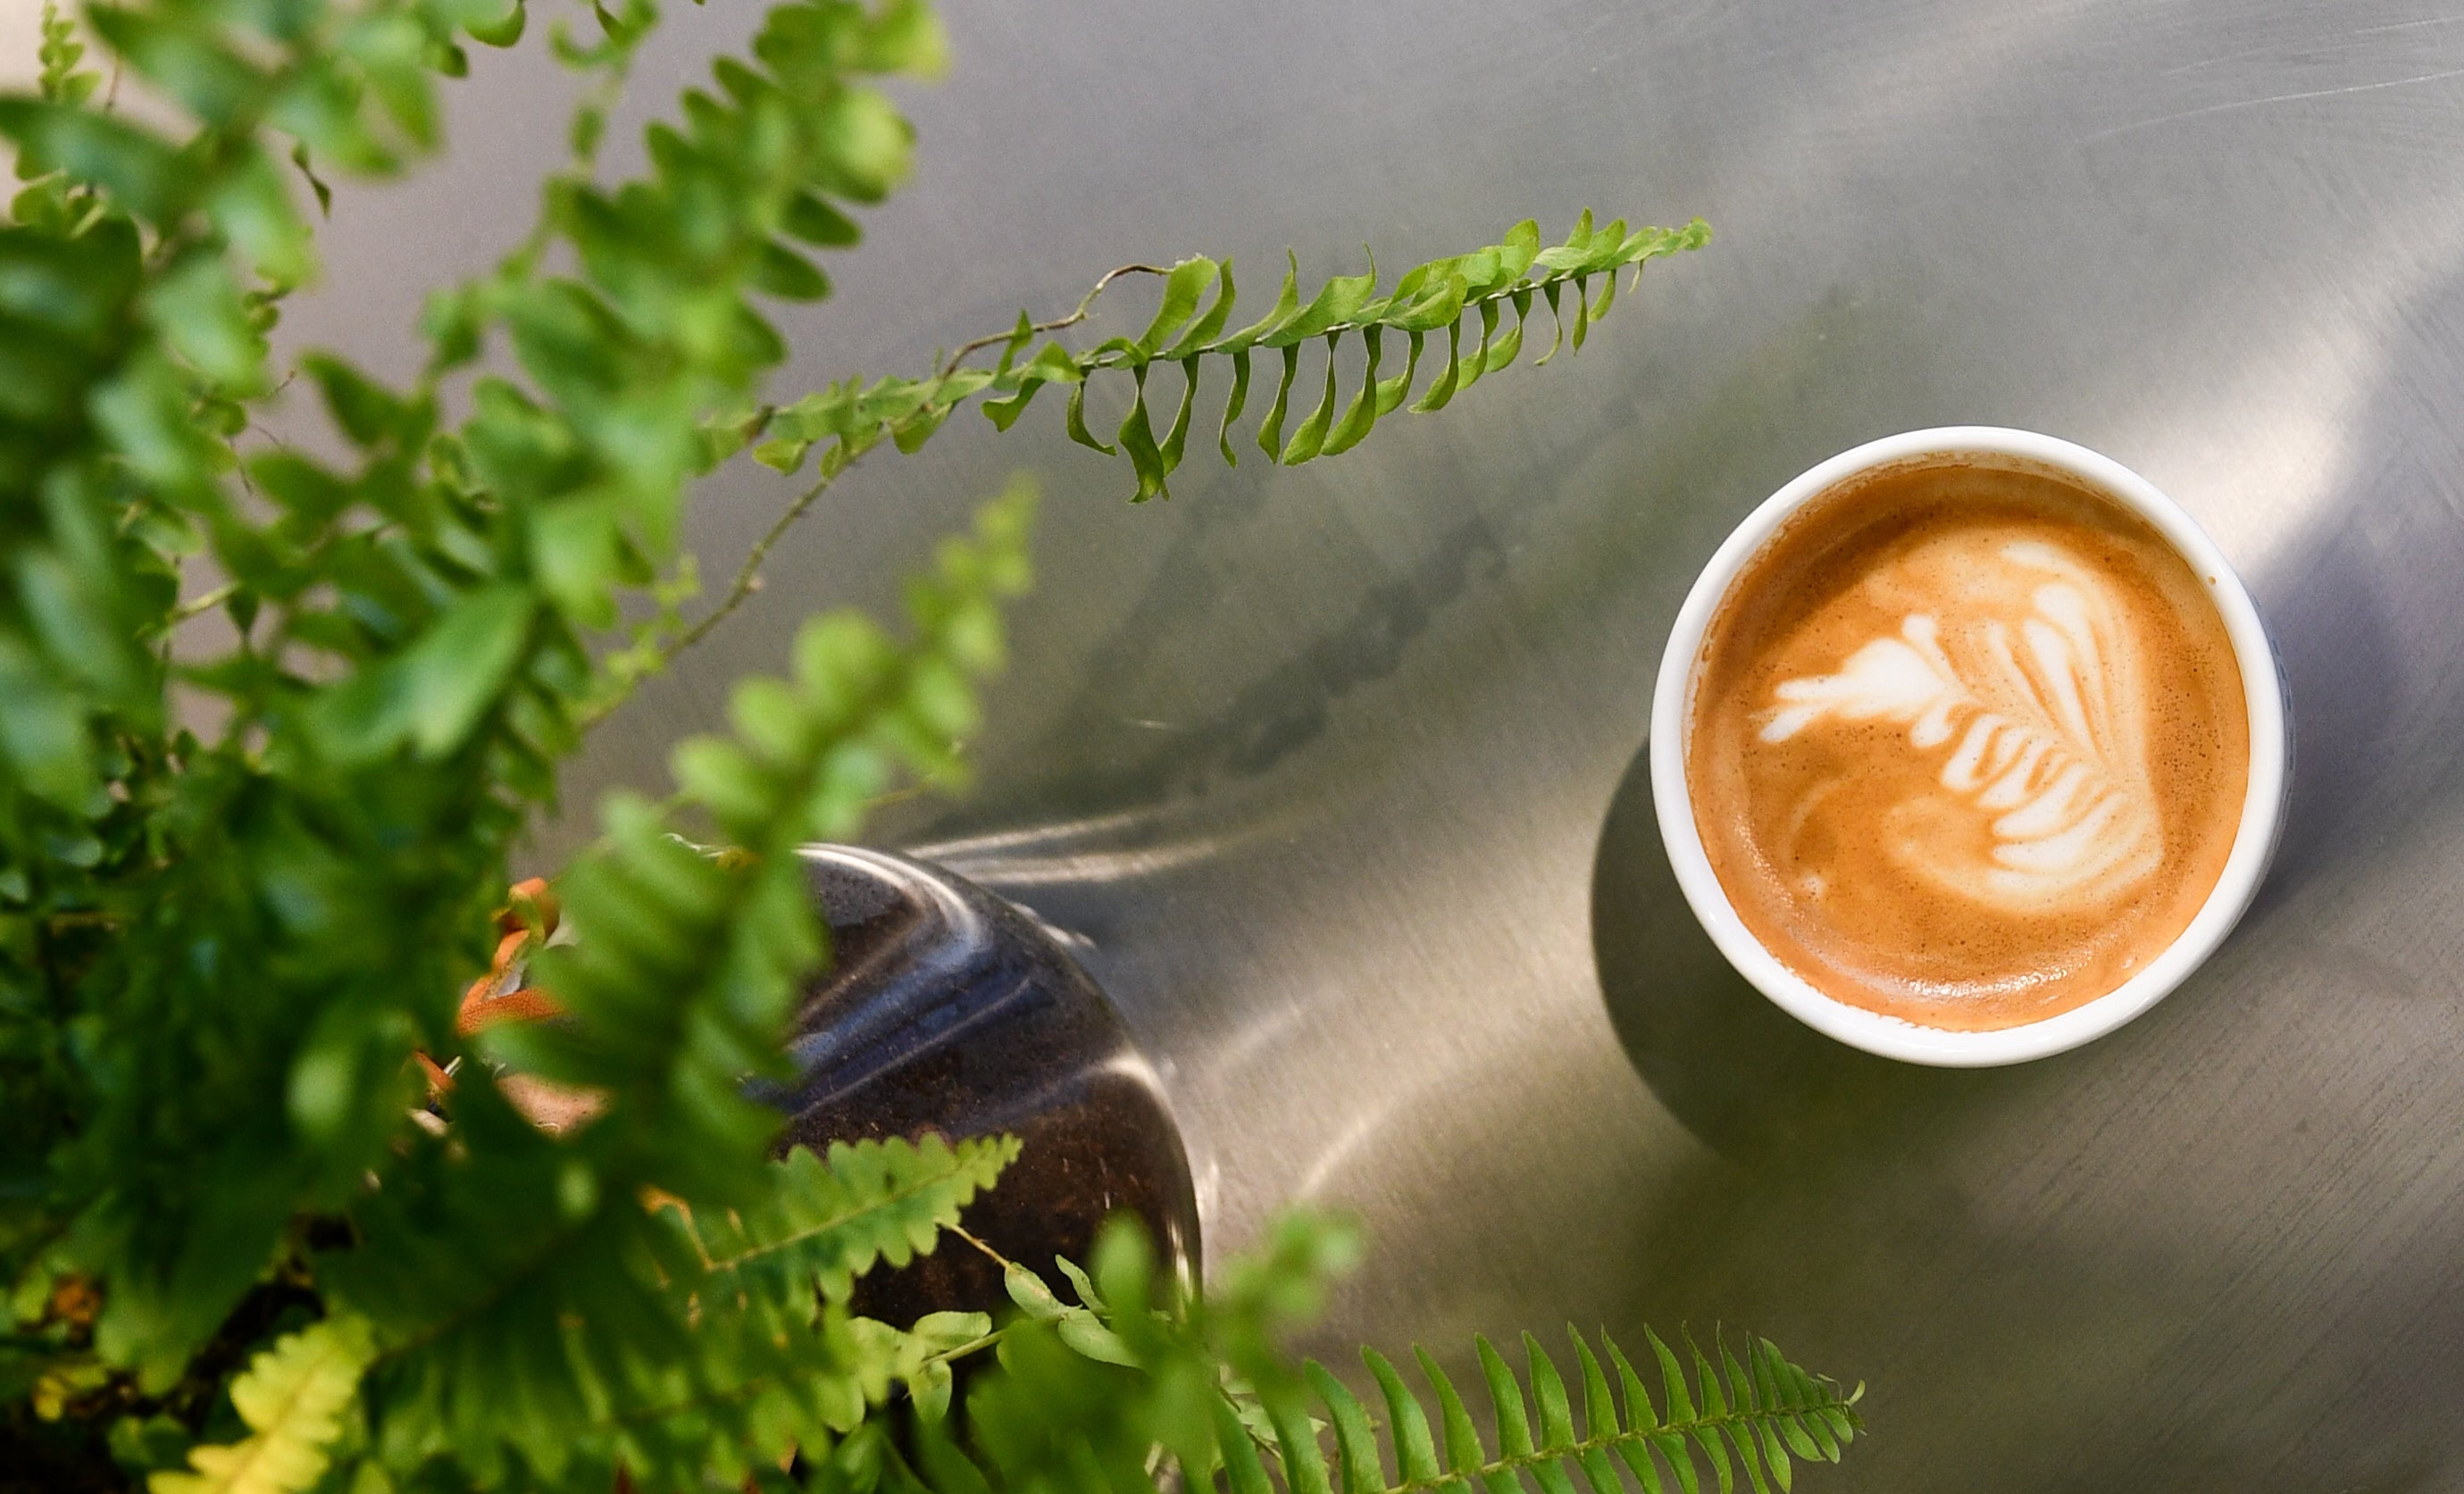 Duurzame koffiecups - Cappuccino met latte art op een tafel, van bovenaf gefotografeerd. Groene plant aan de linkerkant van het beeld.